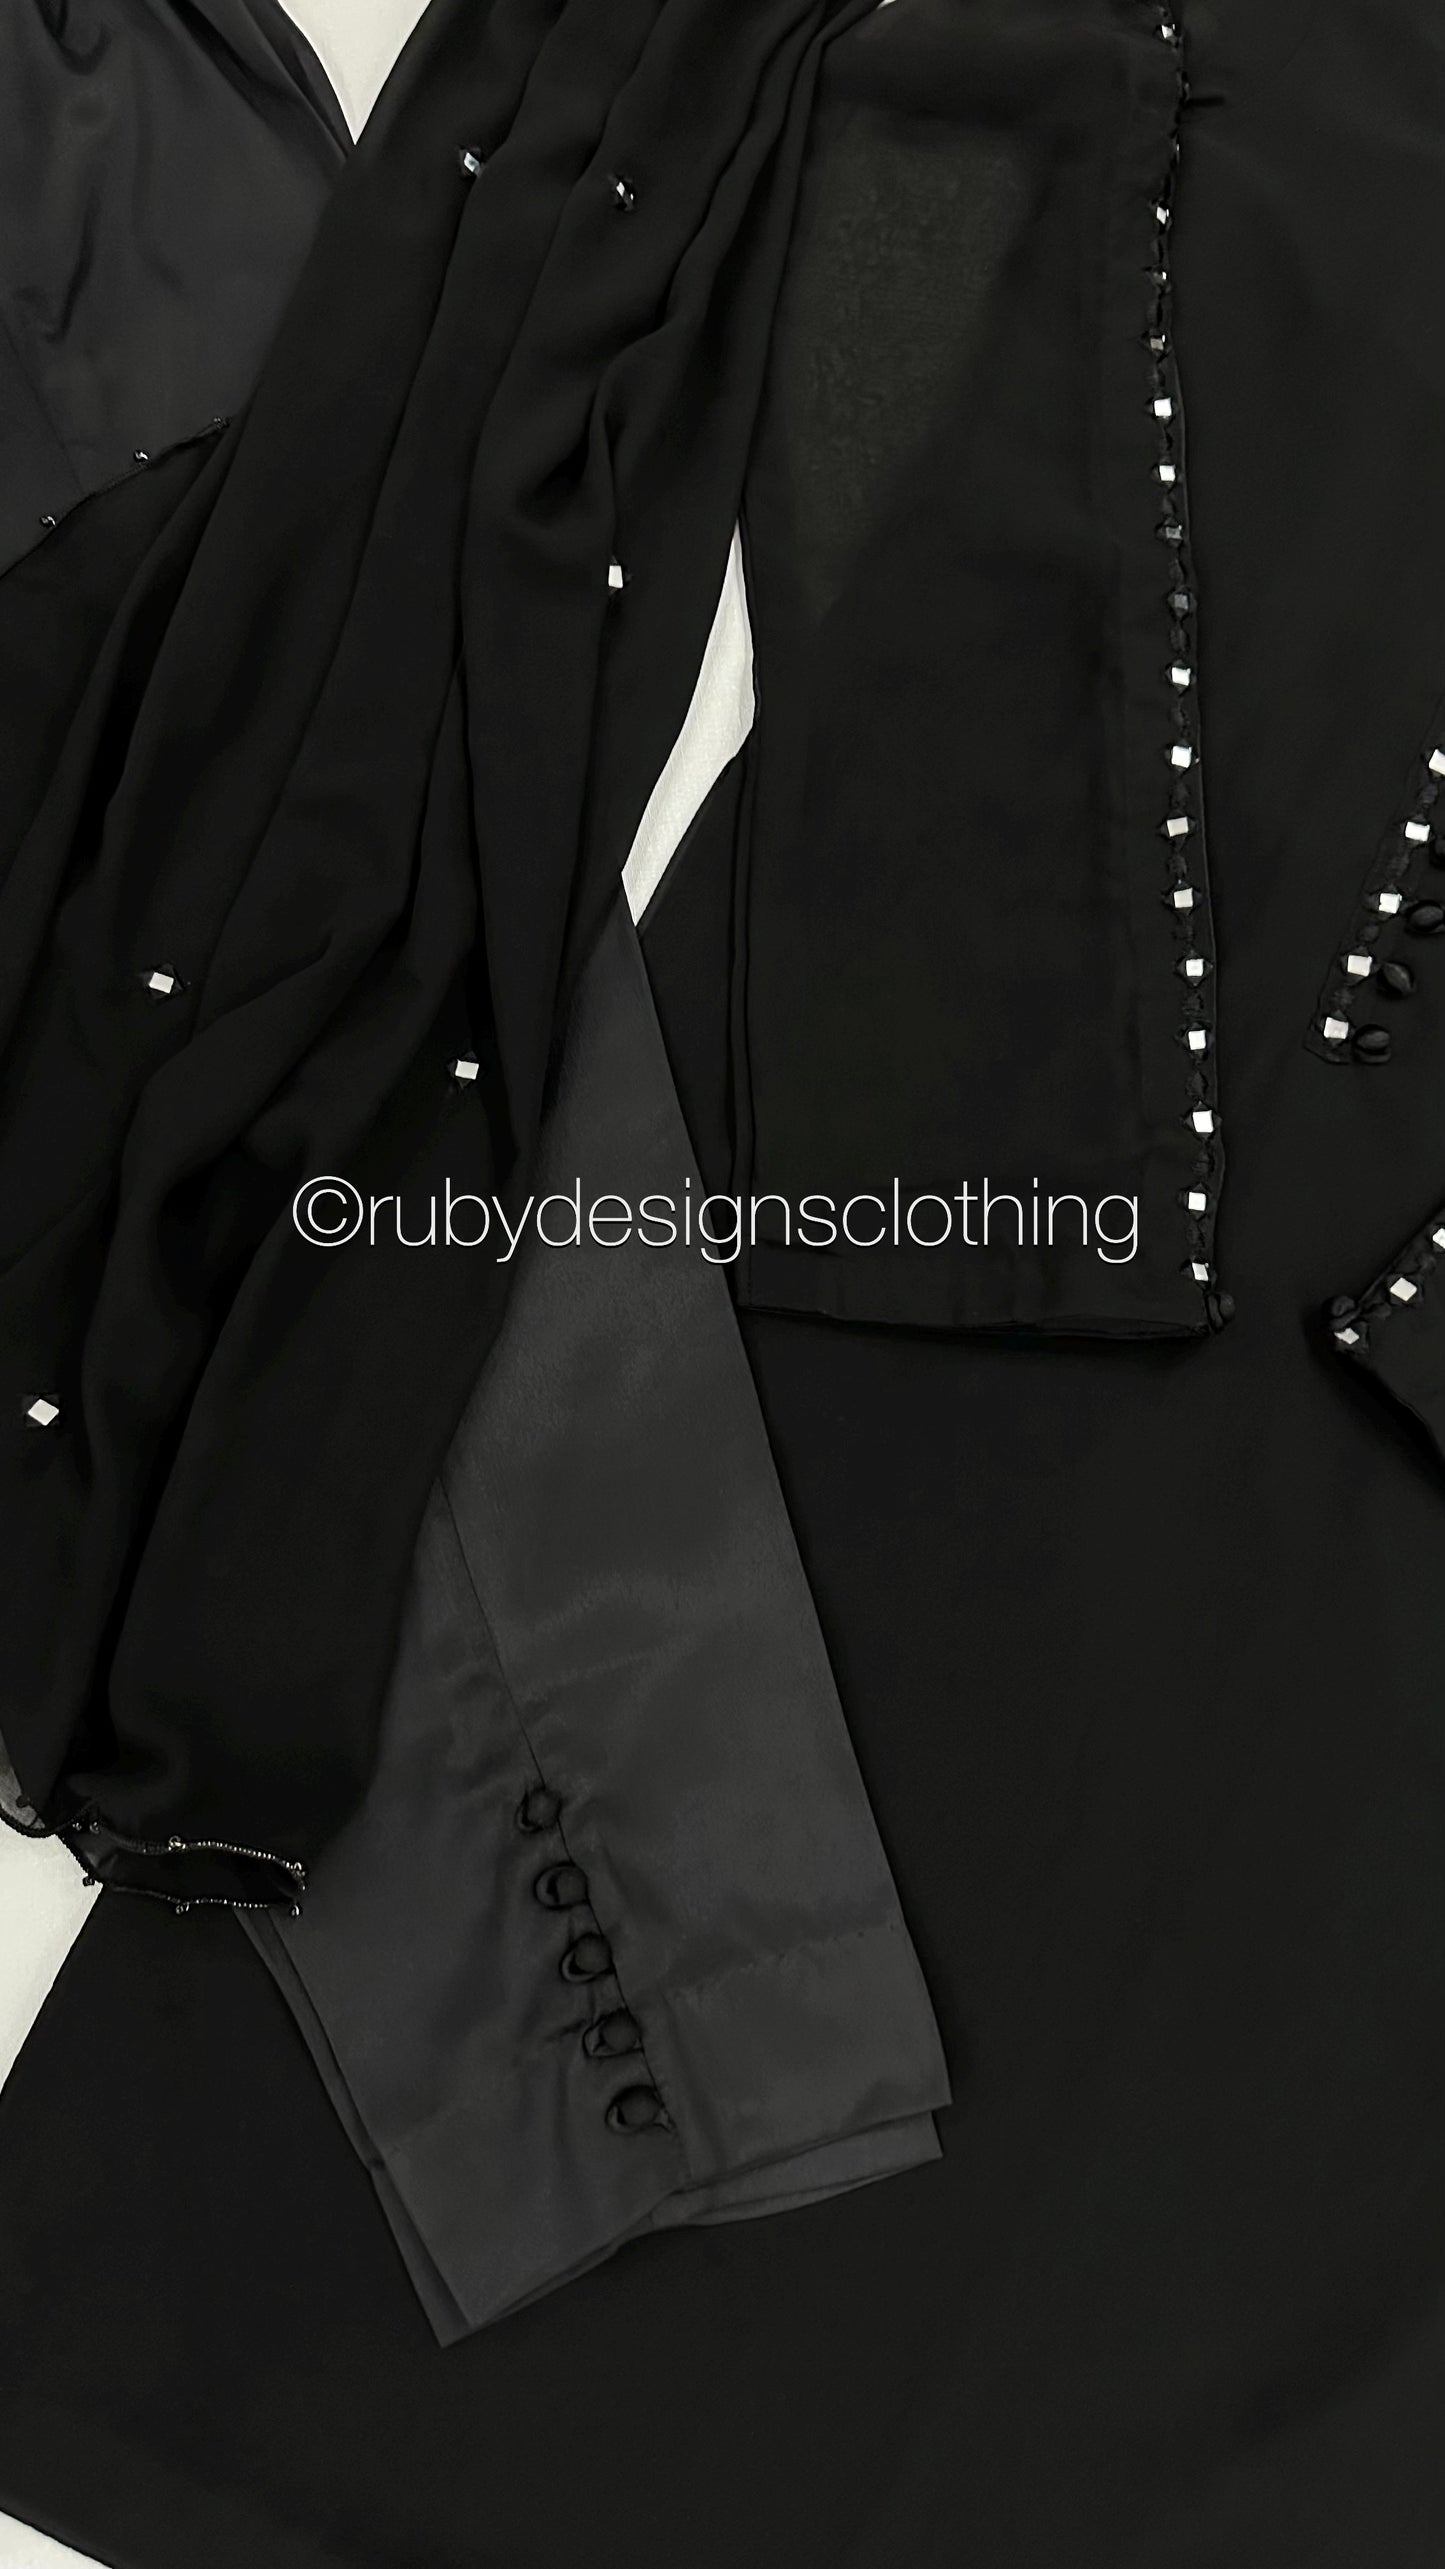 KAYRA Black - 3 Piece Black Chiffon Suit with Split Sleeve